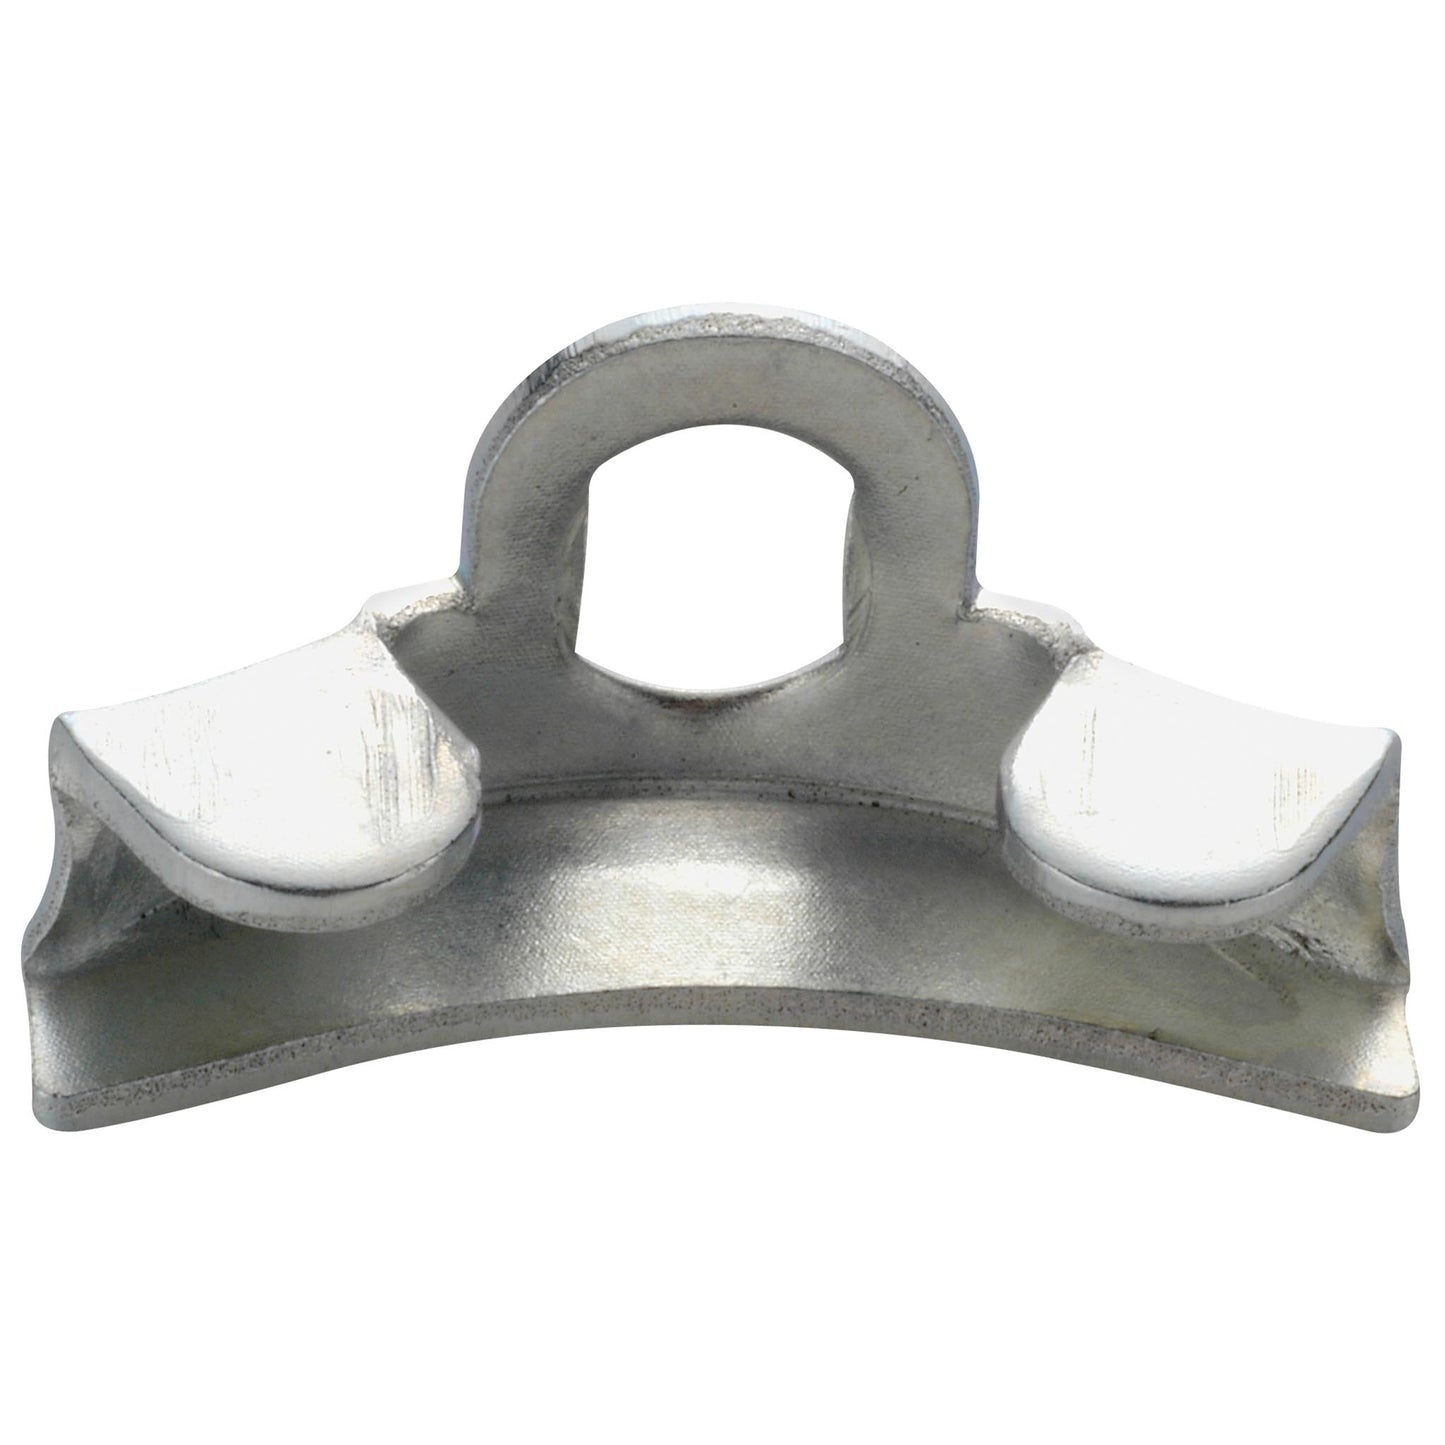 Chain tensioner - cap galvanized steel